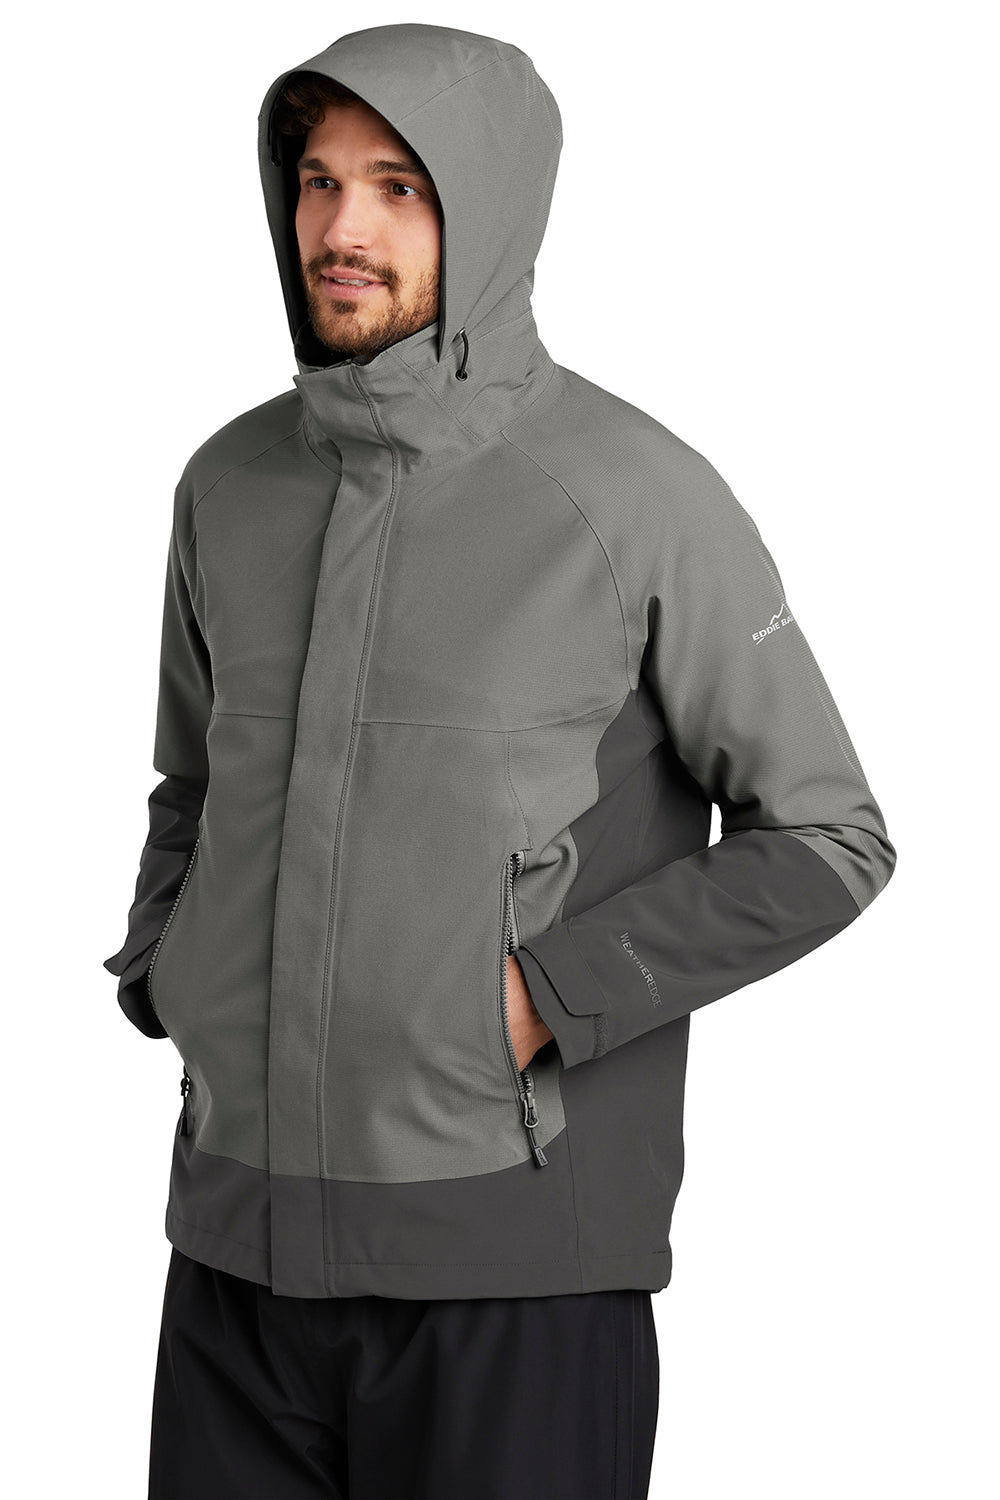 Eddie Bauer EB558 Mens WeatherEdge Waterproof Full Zip Hooded Jacket Metal Grey Model 3Q